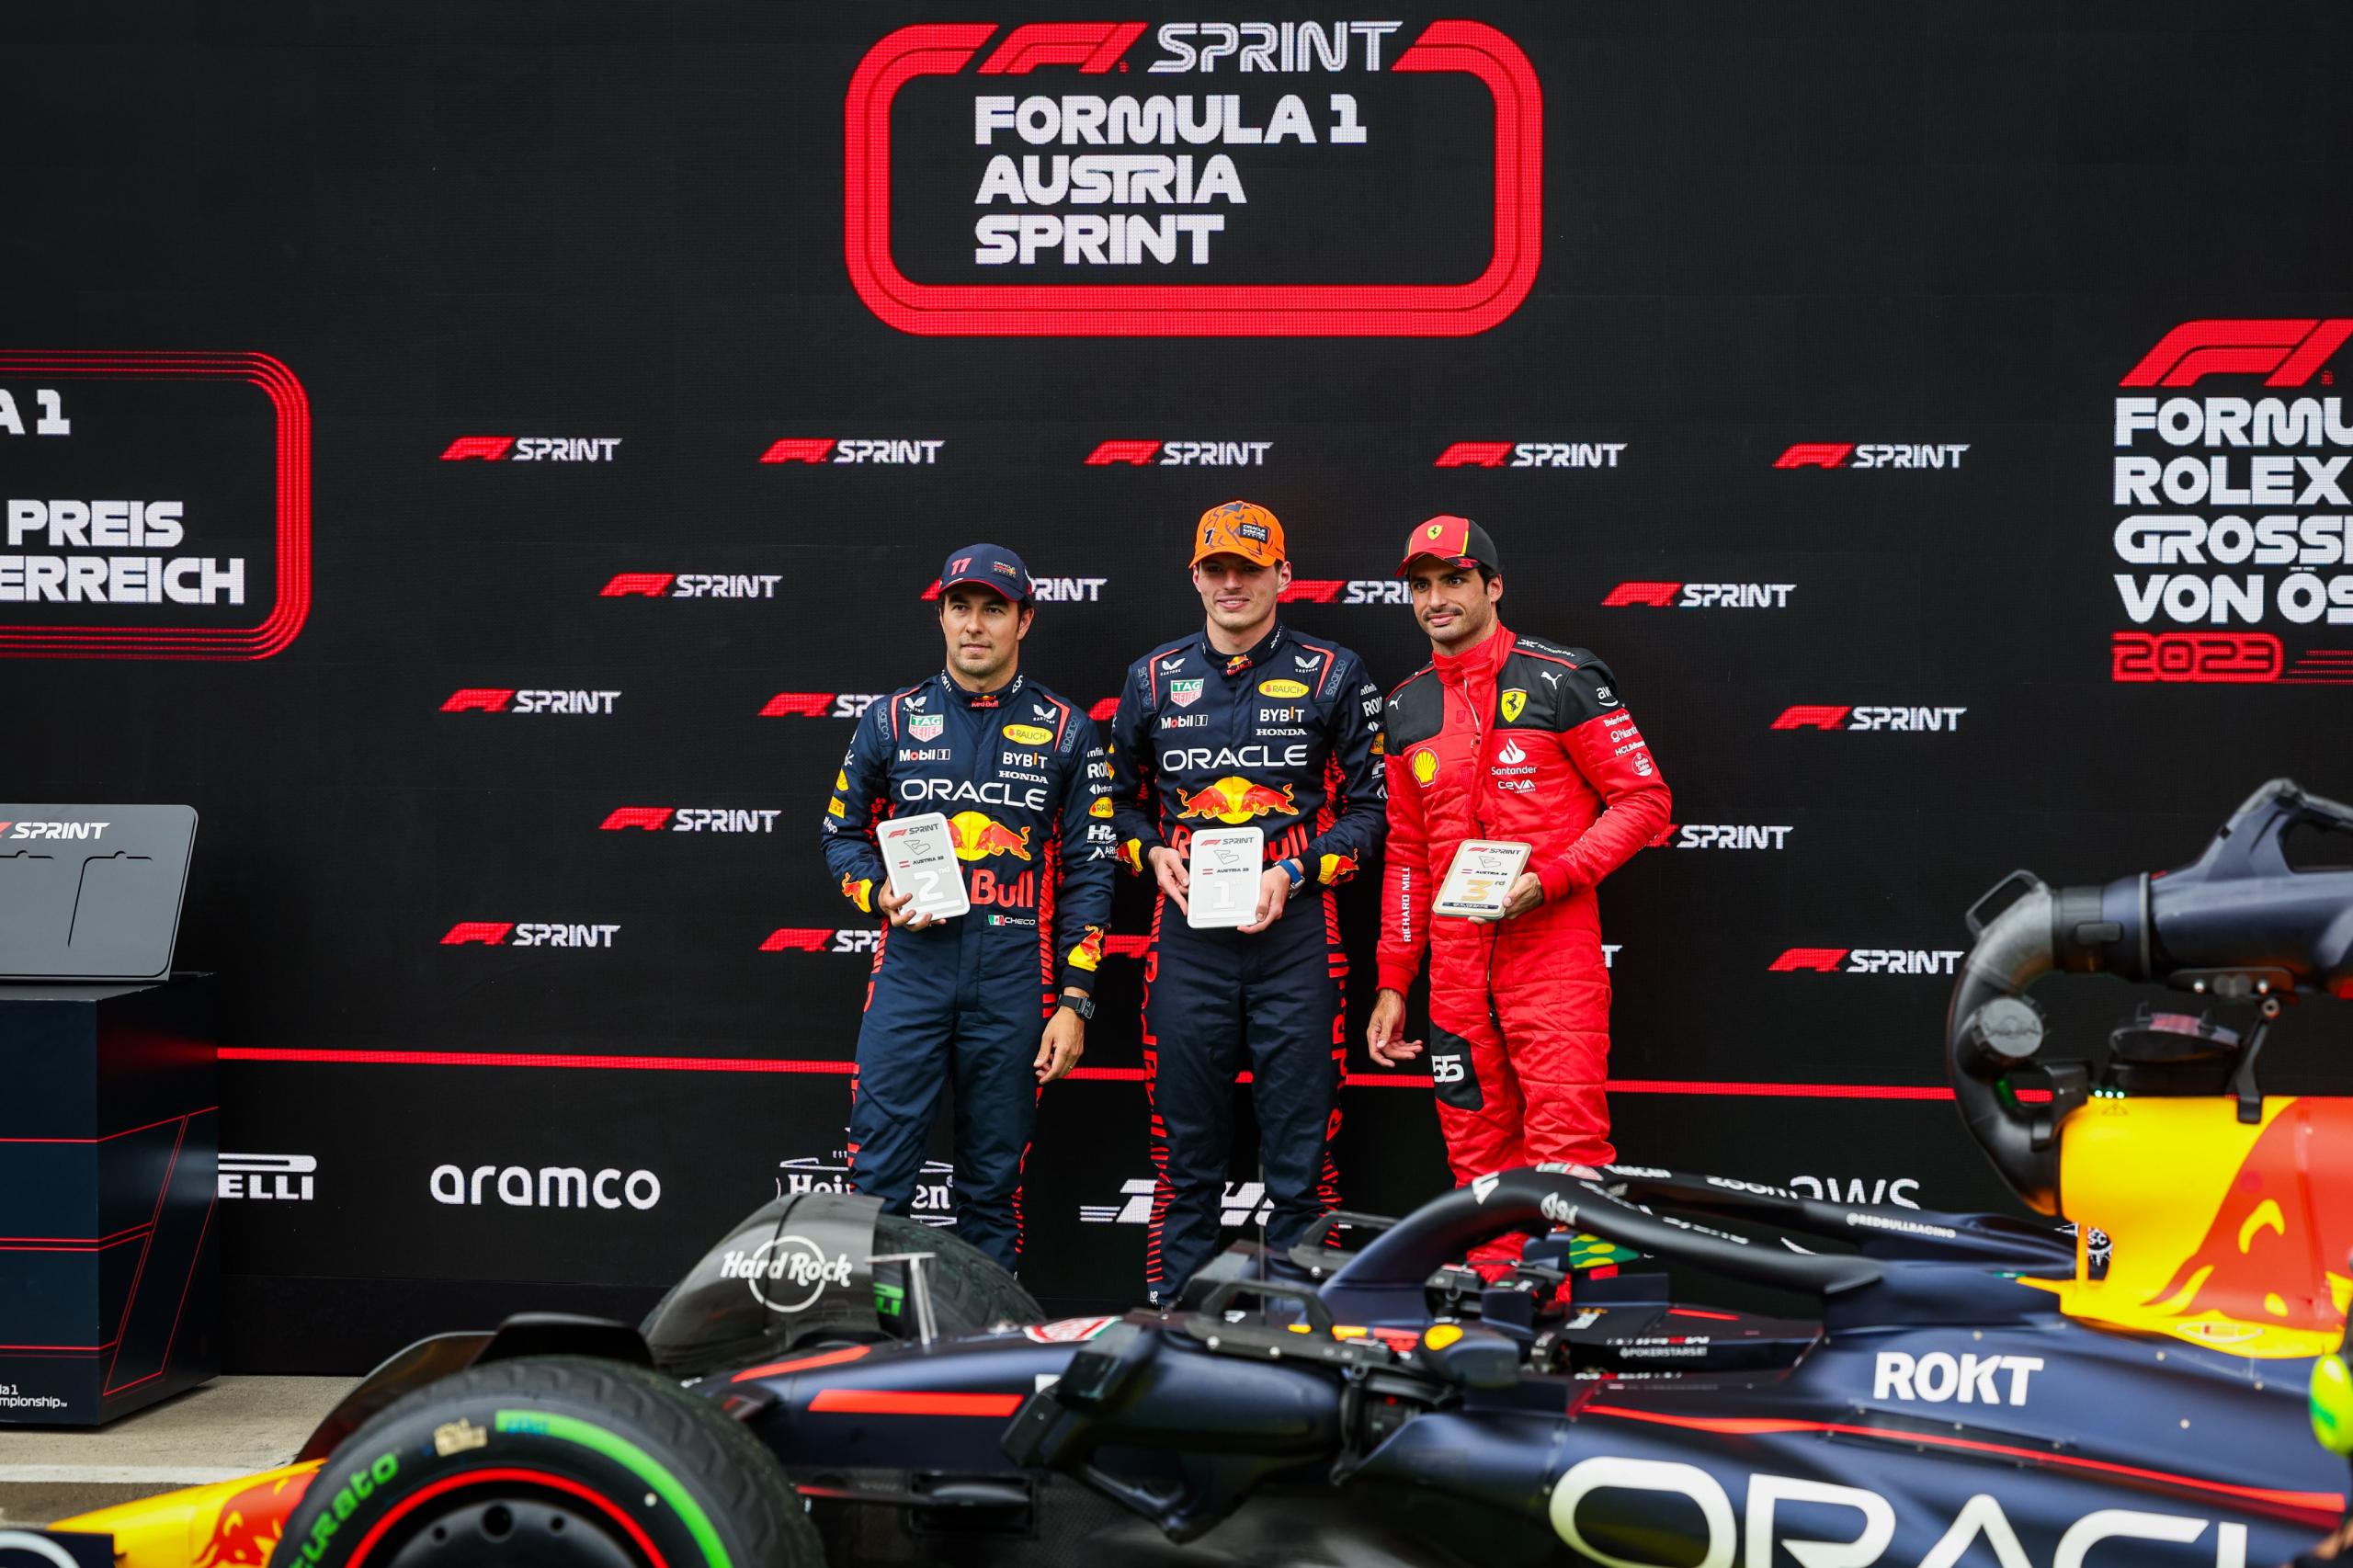 Journée sprint autrichienne dominée par Max Verstappen devant Checo Pérez - Crédit photo : FIA